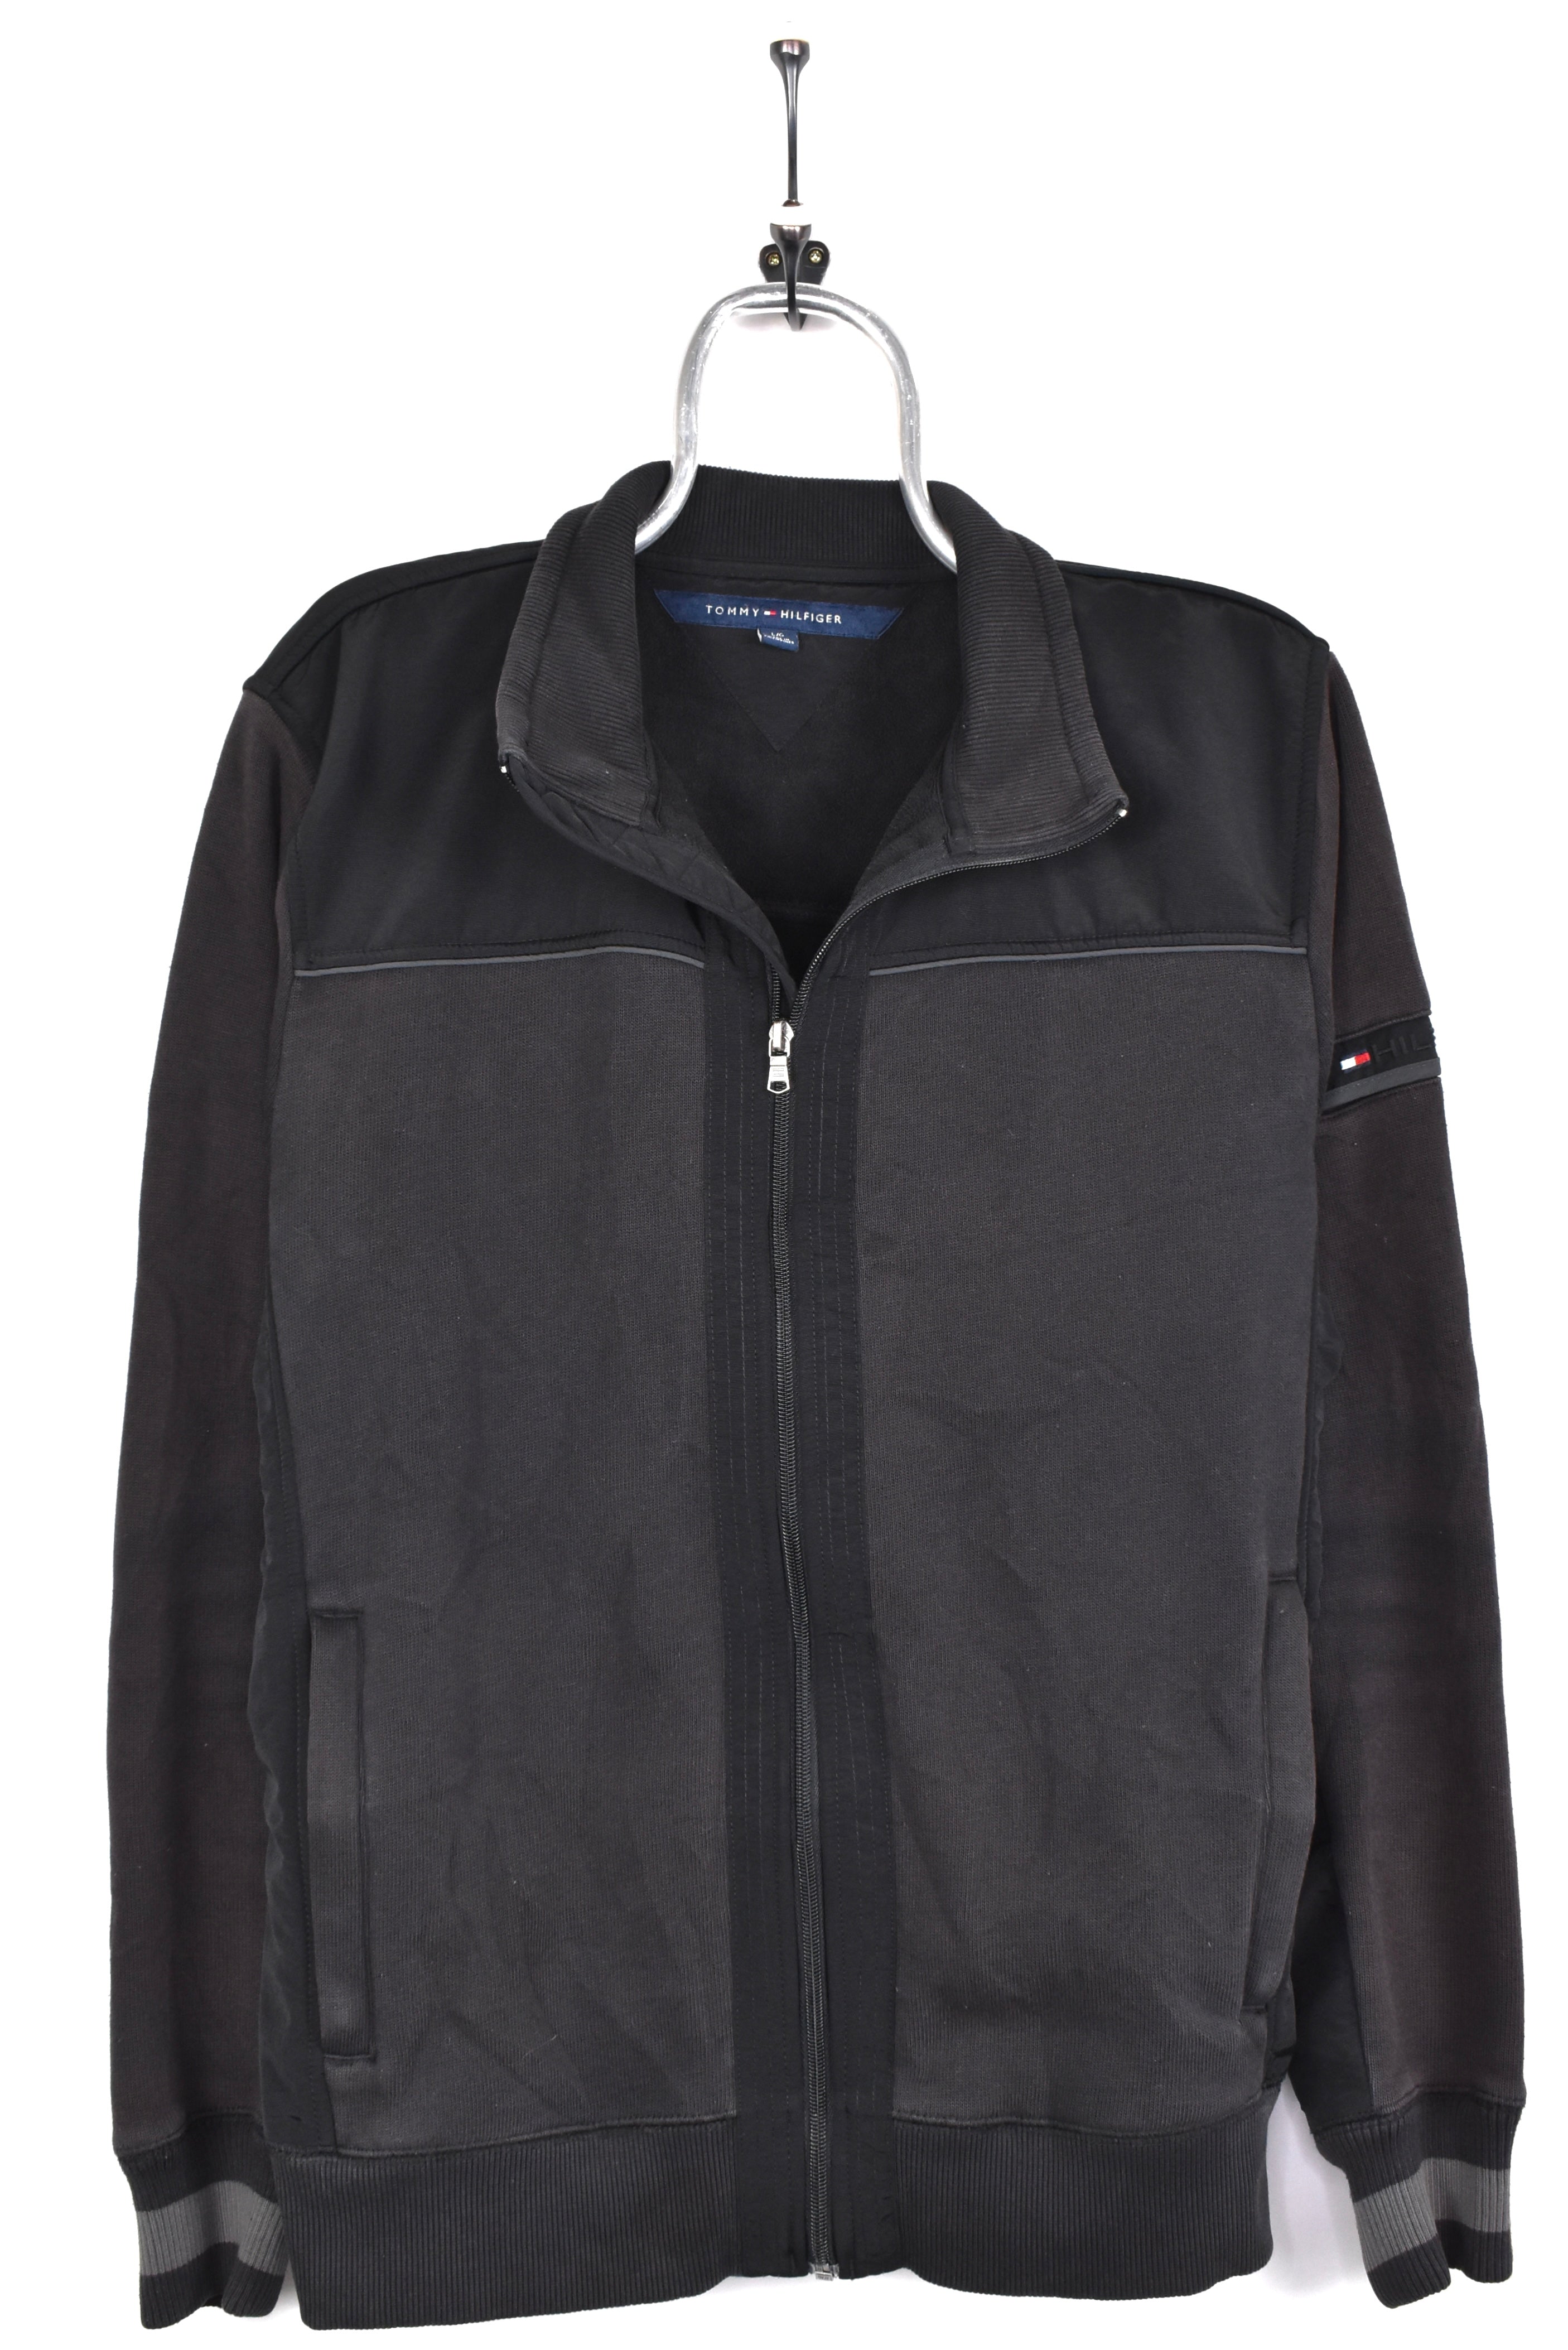 Vintage Tommy Hilfiger jacket, black heavy coat - AU L TOMMY HILFIGER